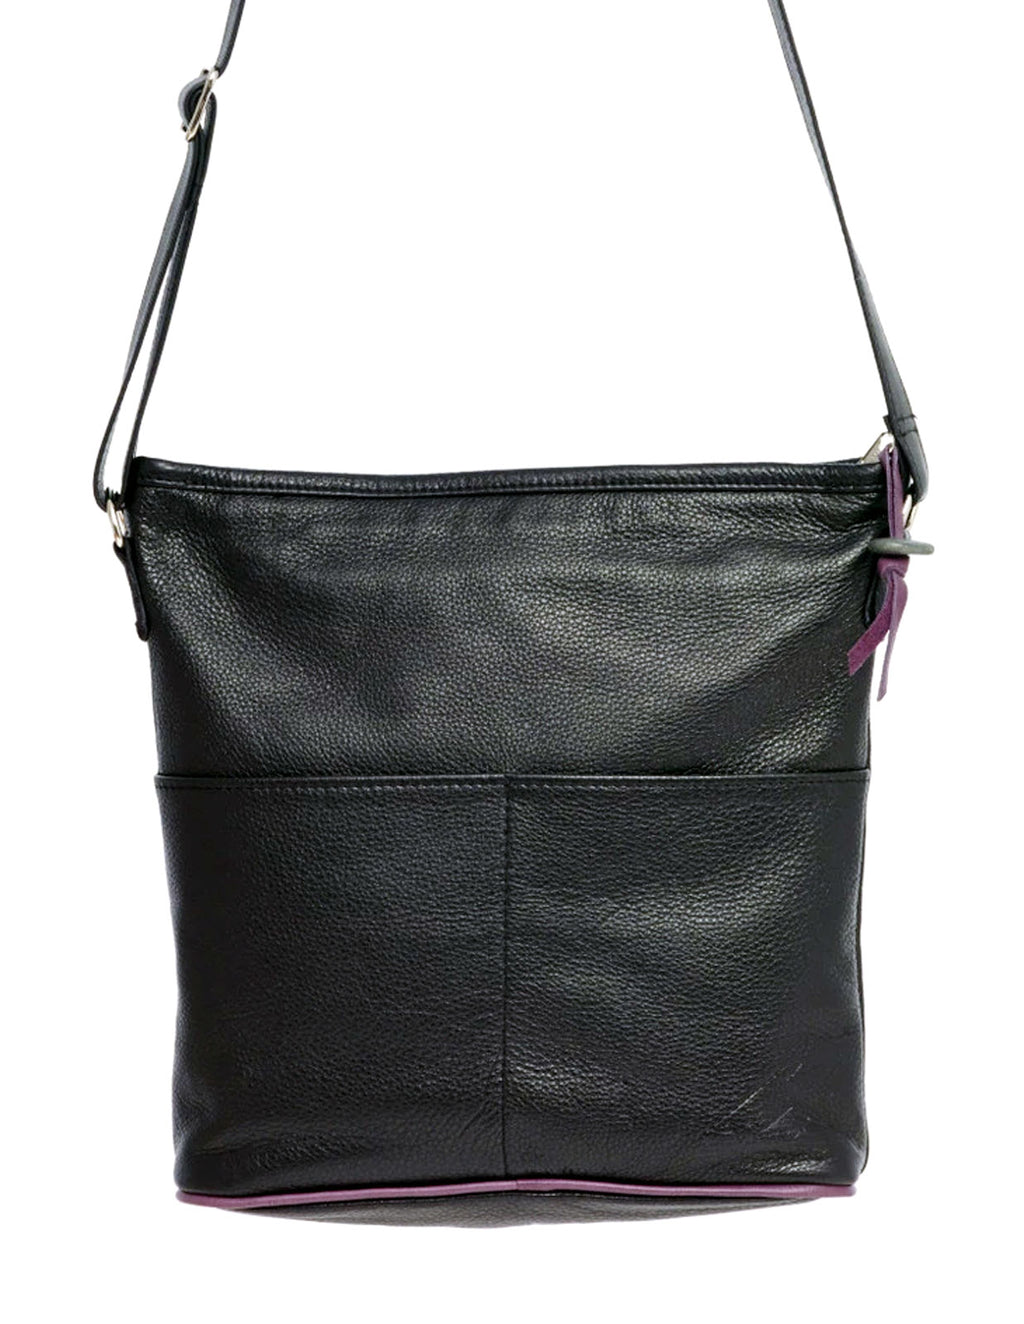 Buy Black Leather Bag Soft Leather Bag Slouchy Leather Bag Large Women Leather  Purse Leather Handbag Deluna Bag Online in India - Etsy